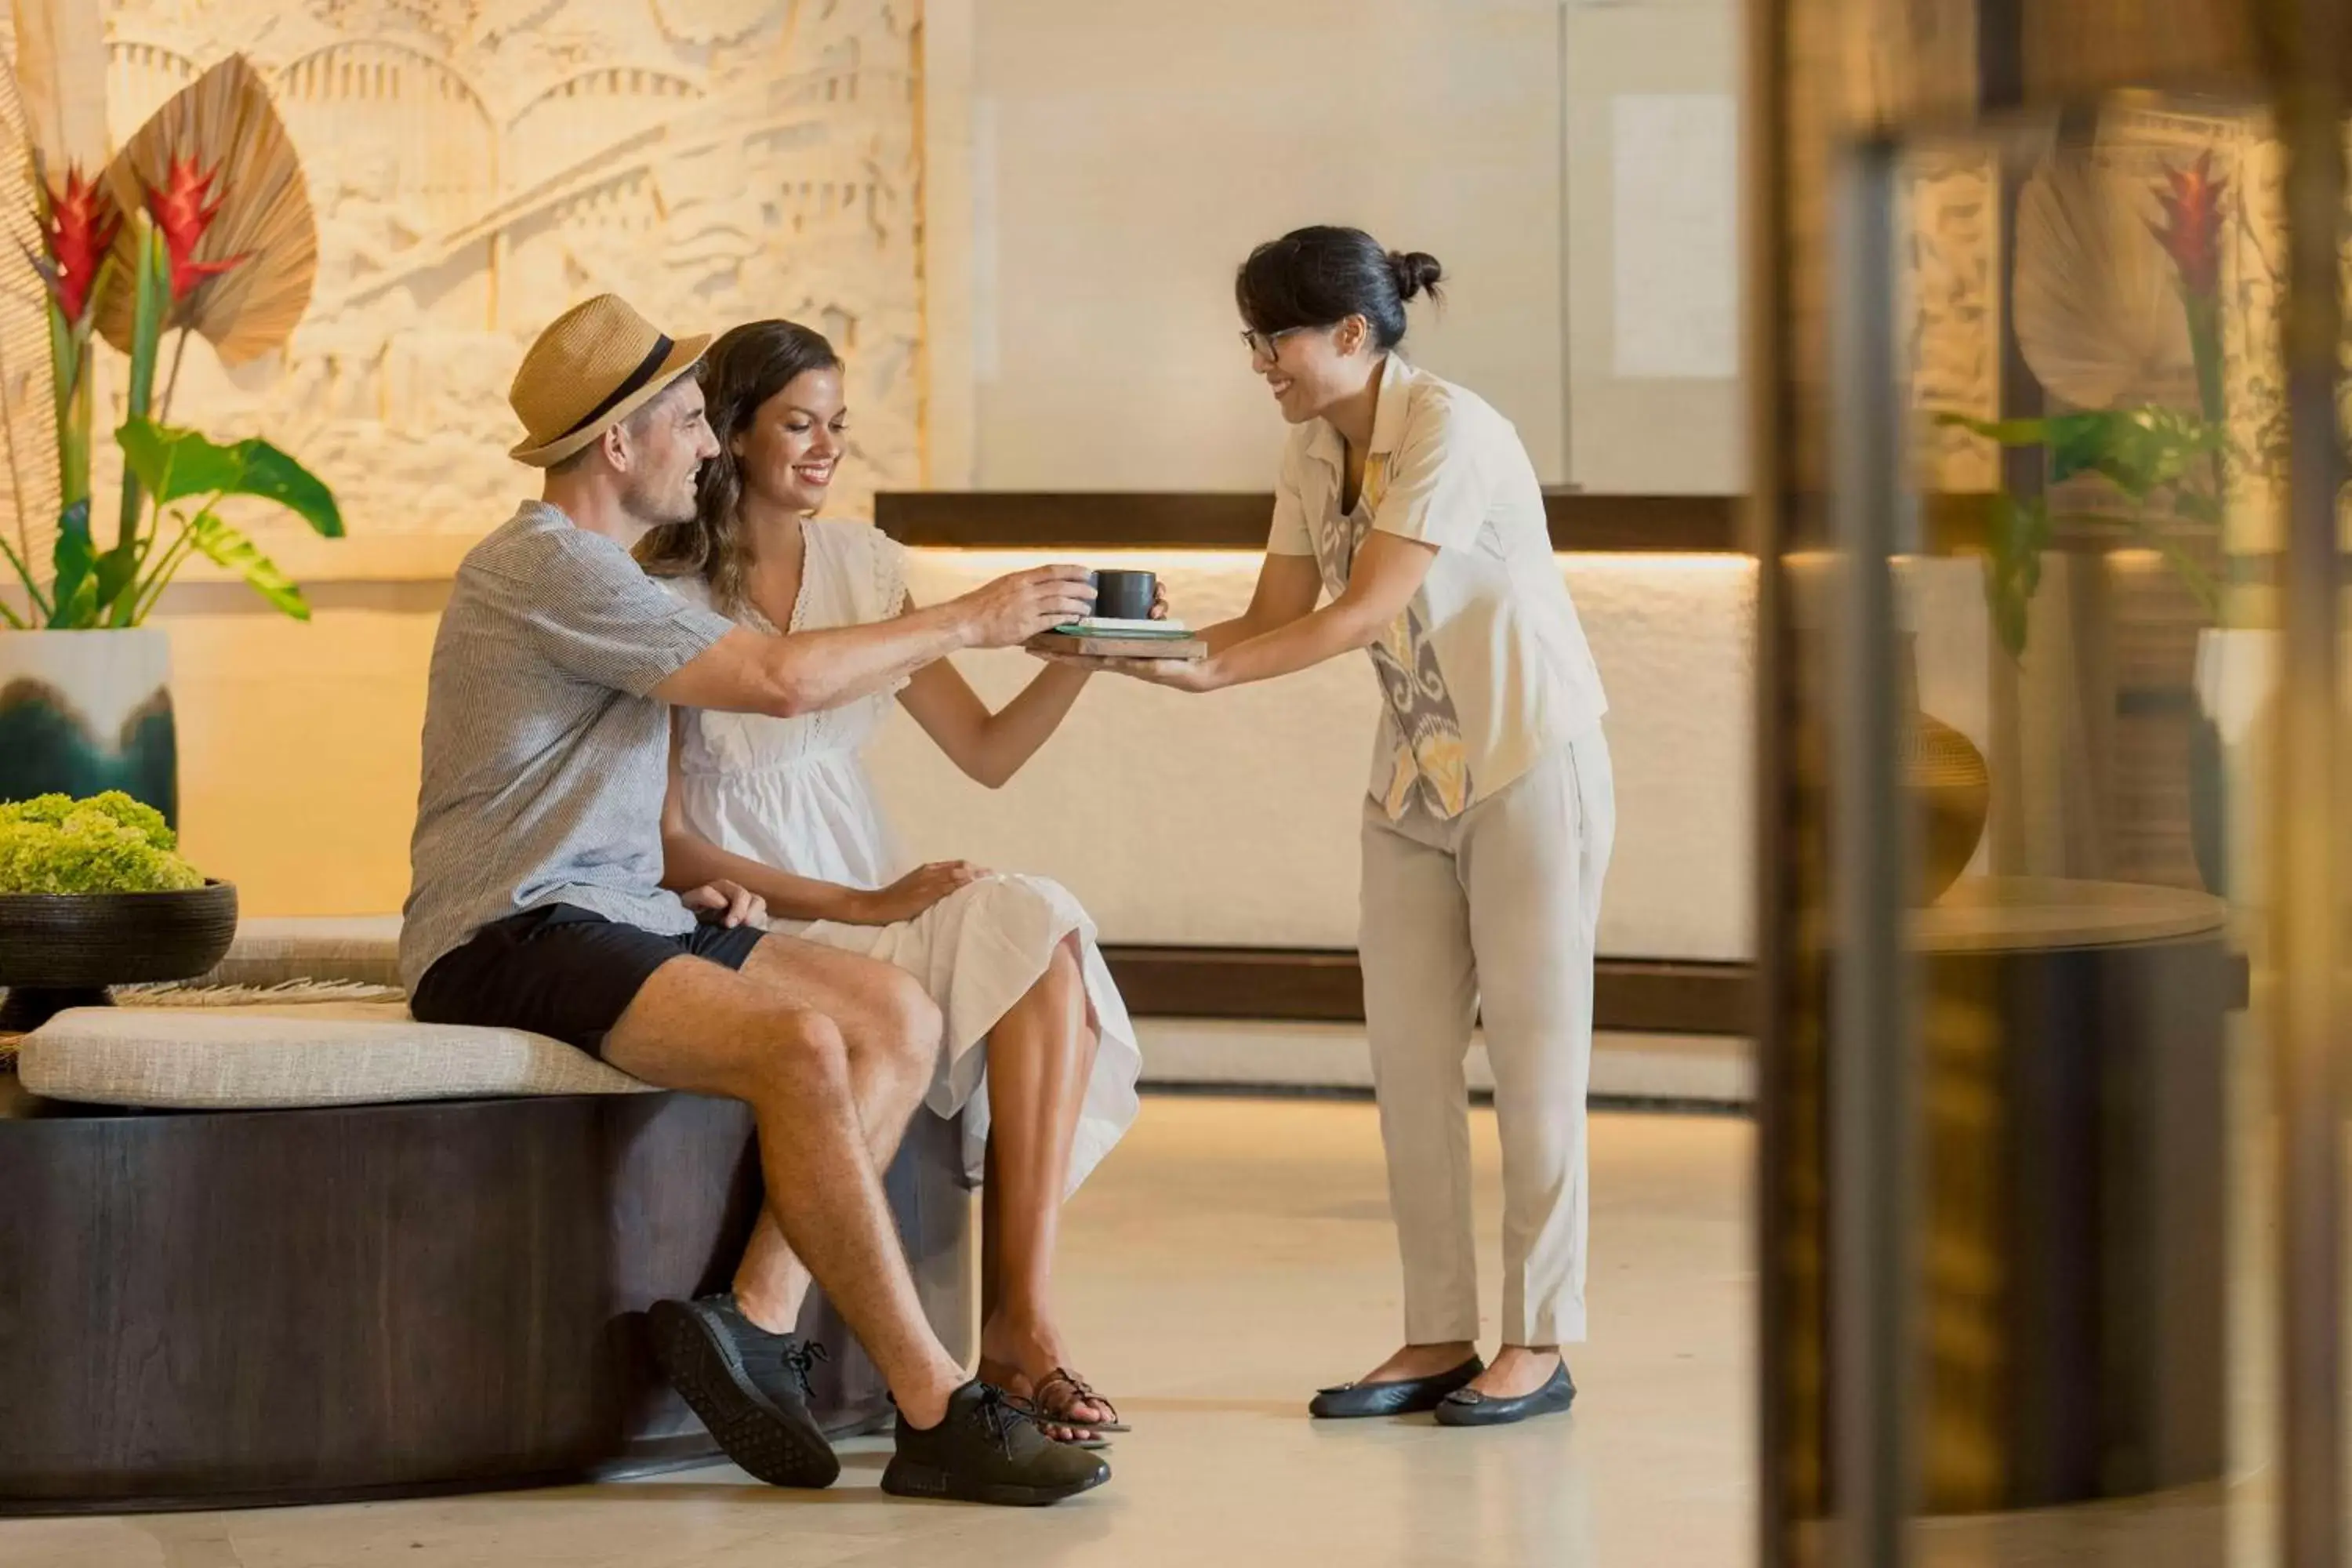 Lobby or reception in Hilton Bali Resort